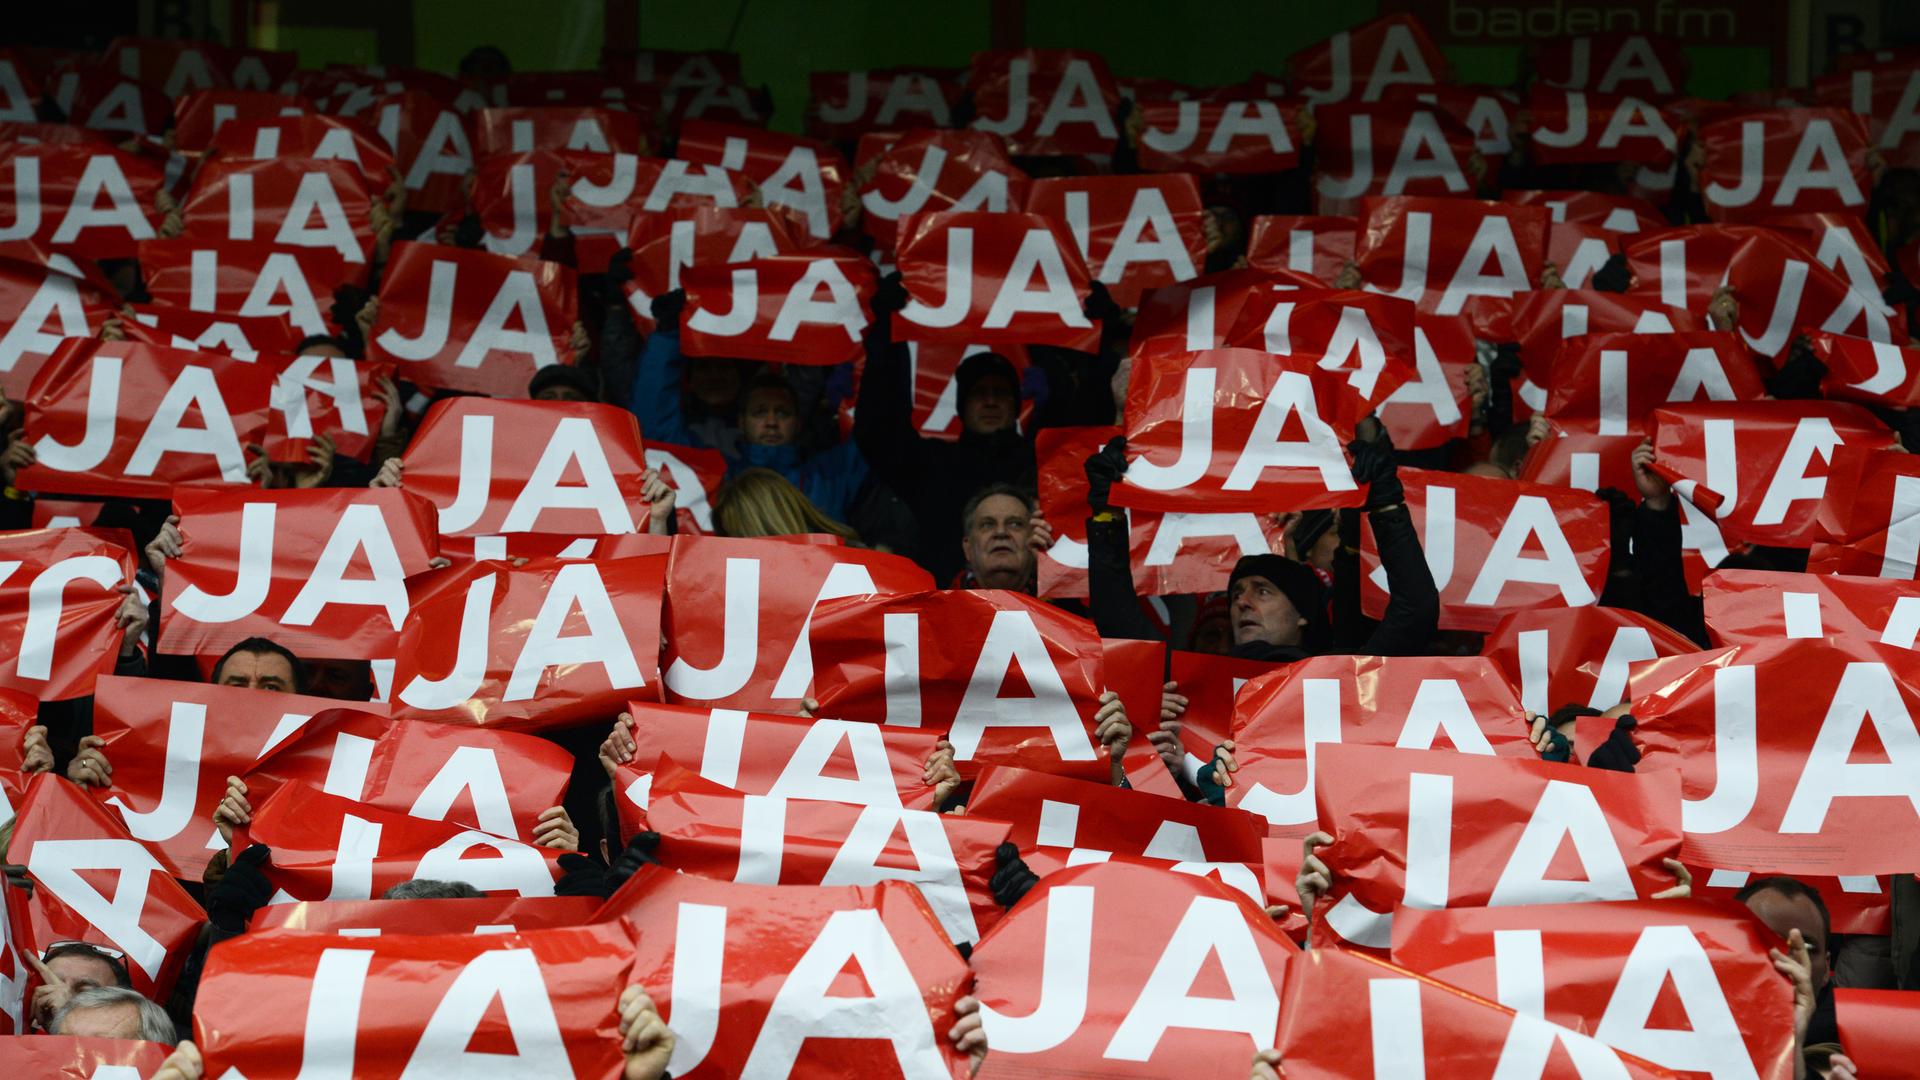 Fans des SC Freiburg halten auf der Tribüne im alten Stadion rote Schilder mit der Aufschrift "JA" in weißen Buchstaben hoch. Es sind rund 50 Schilder zu sehen und kaum Gesichter, da diese hinter dem Schilderwald nicht zu sehen sind. 